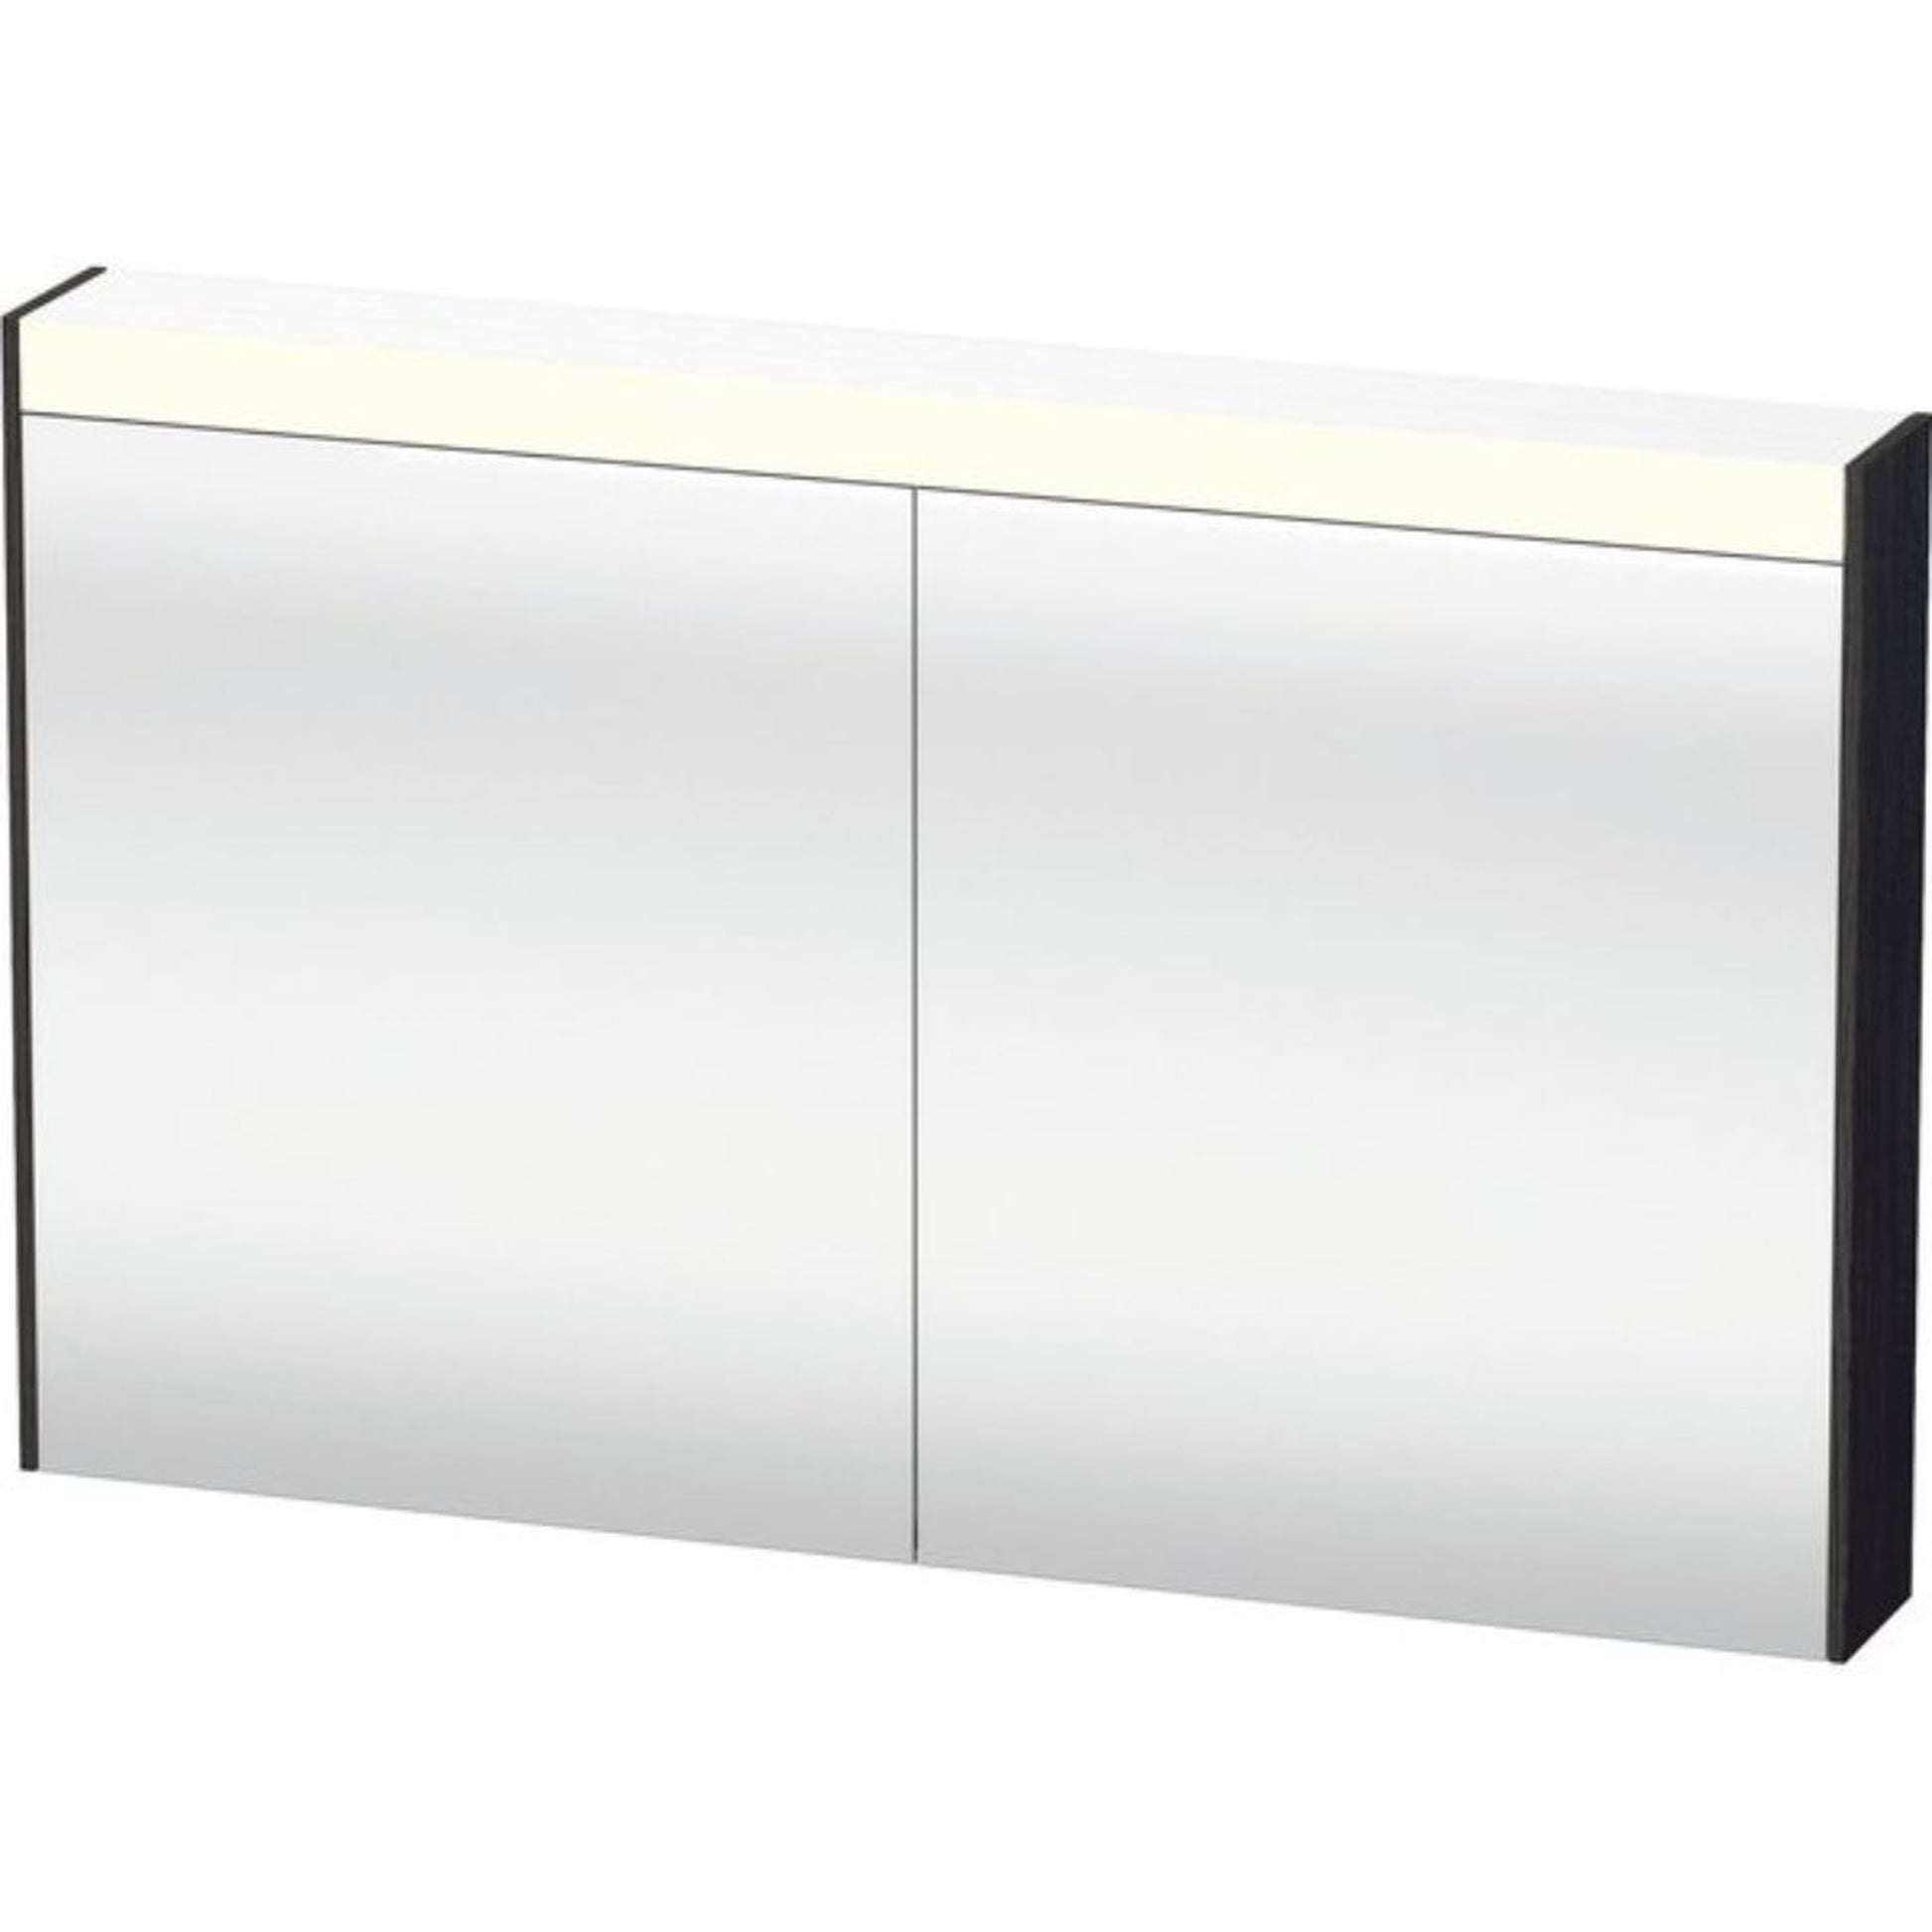 Duravit Brioso 48" x 30" x 6" Mirror Cabinet With Lighting Black Oak